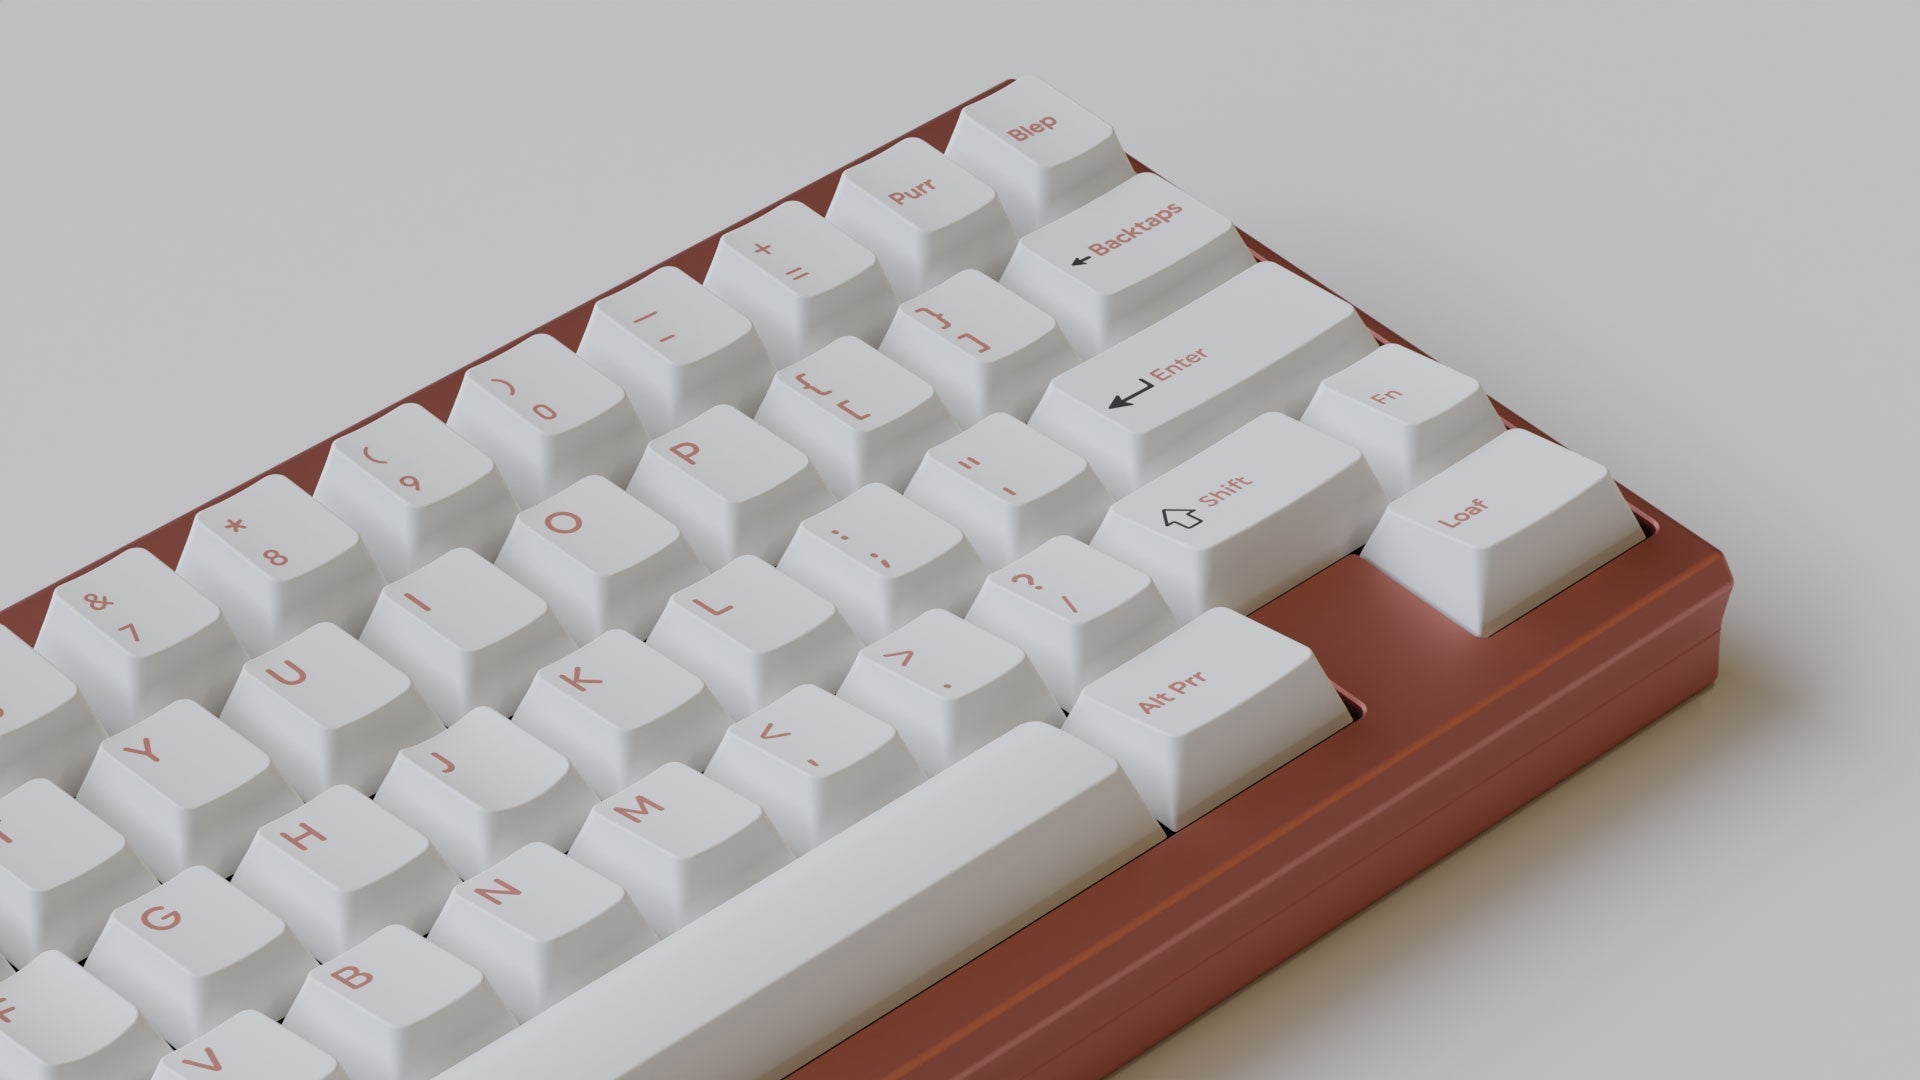 MW-Pono-Light-Keycaps-Mechanical-Keyboard-26